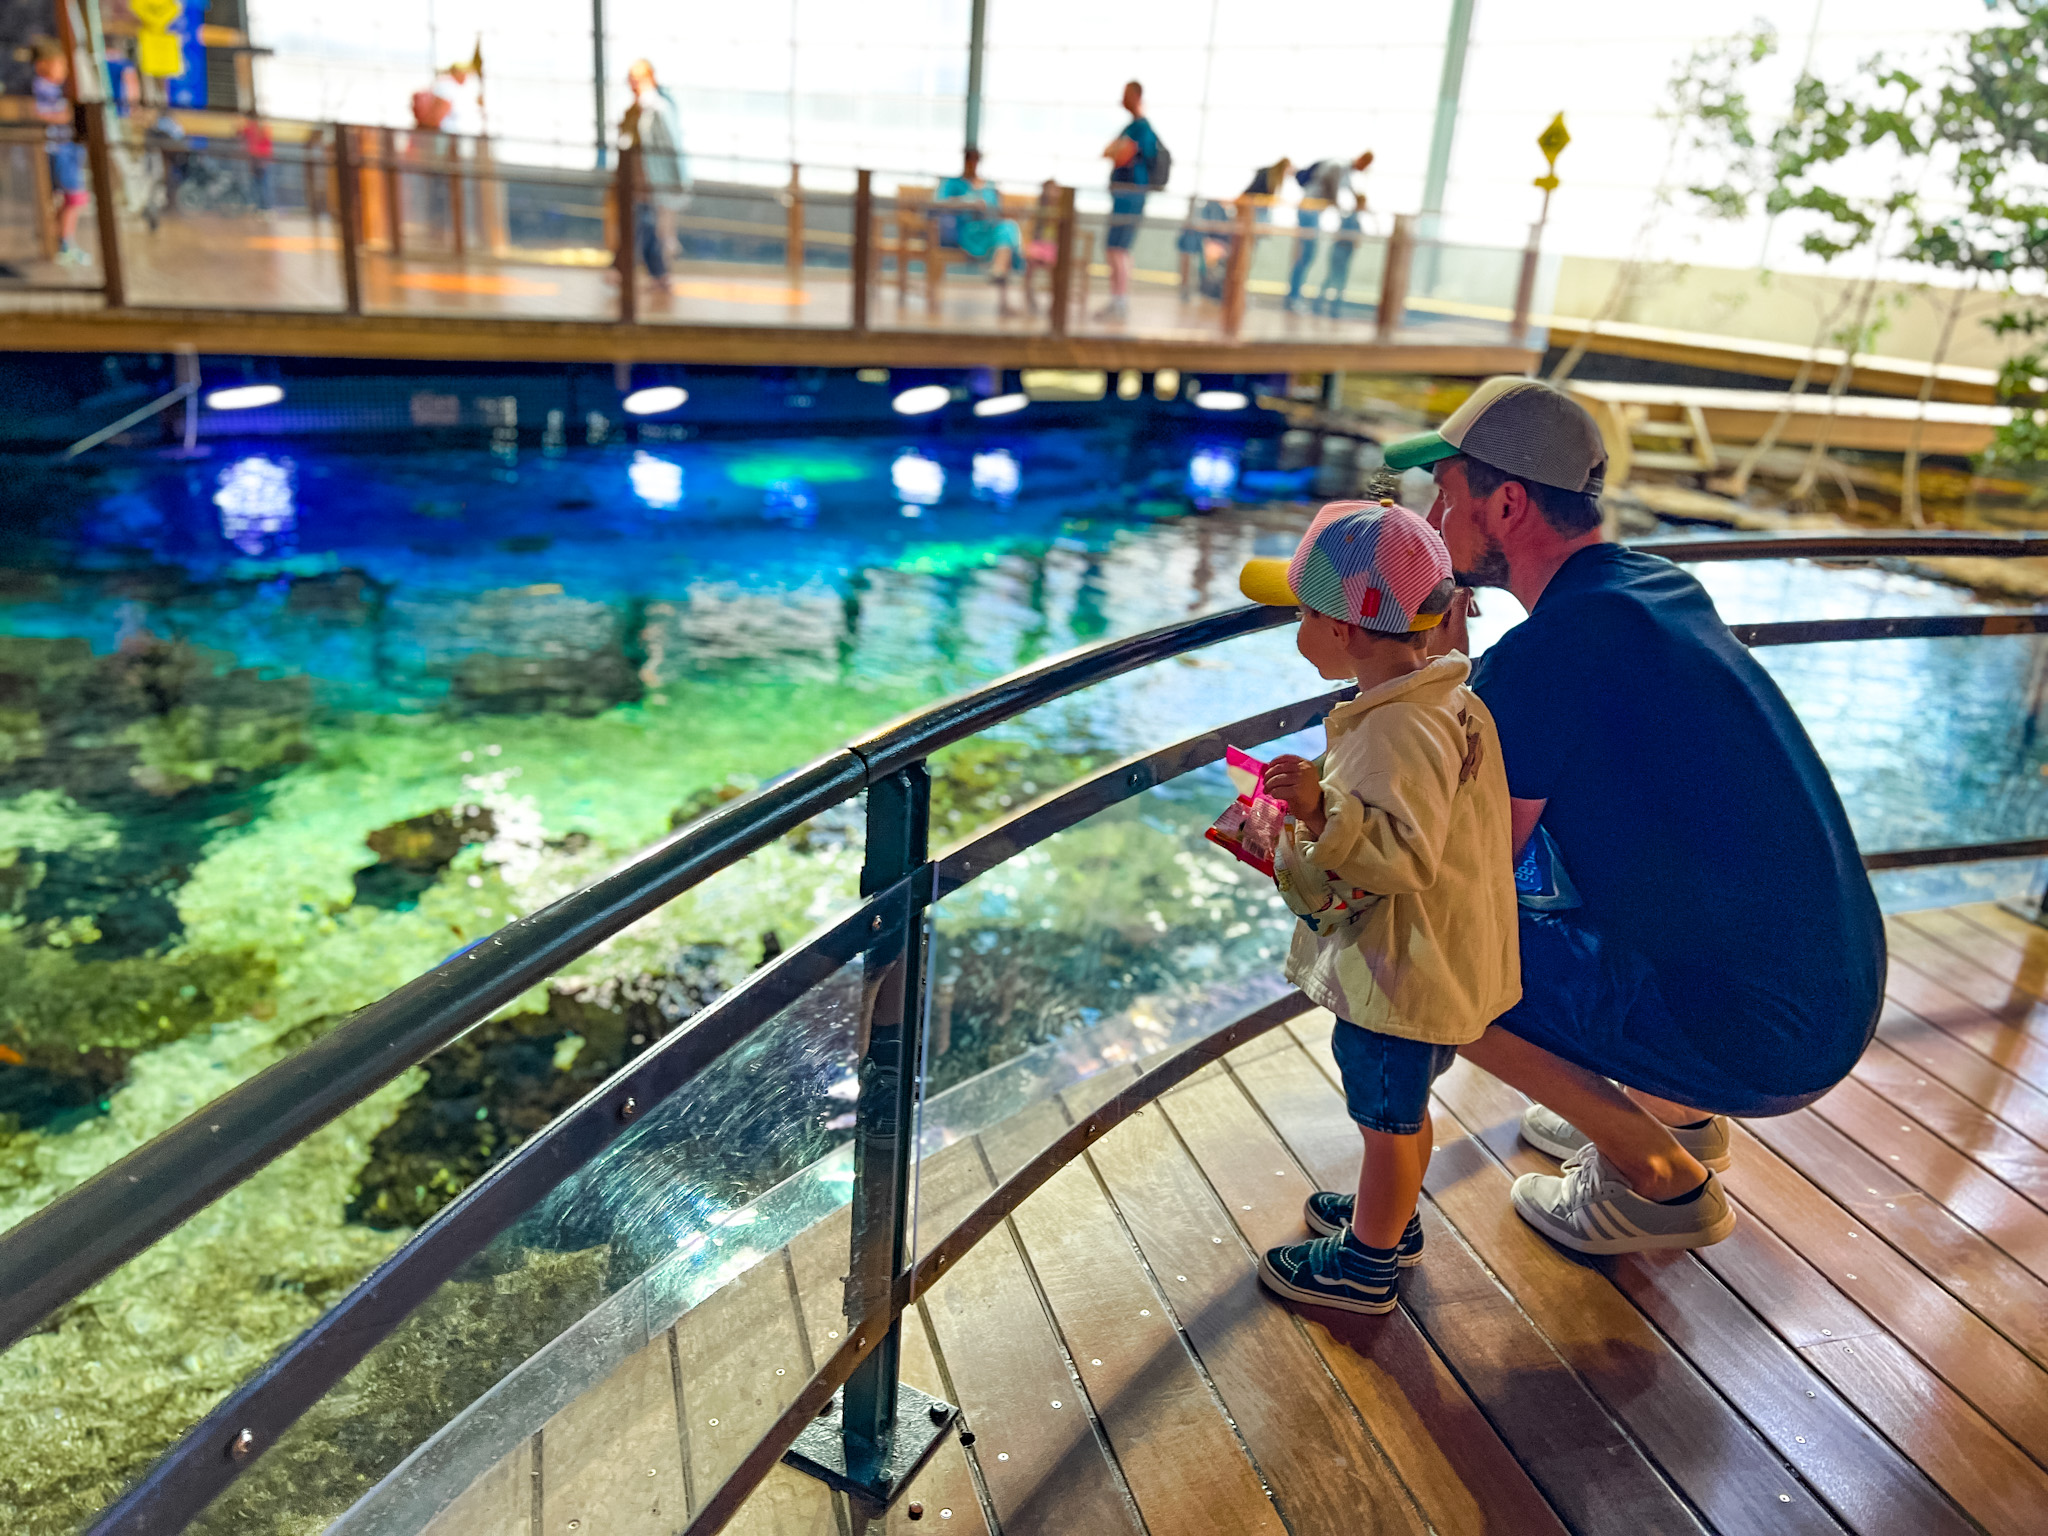 Nausicaa aquarium visite côte d'opale weekend activité famille